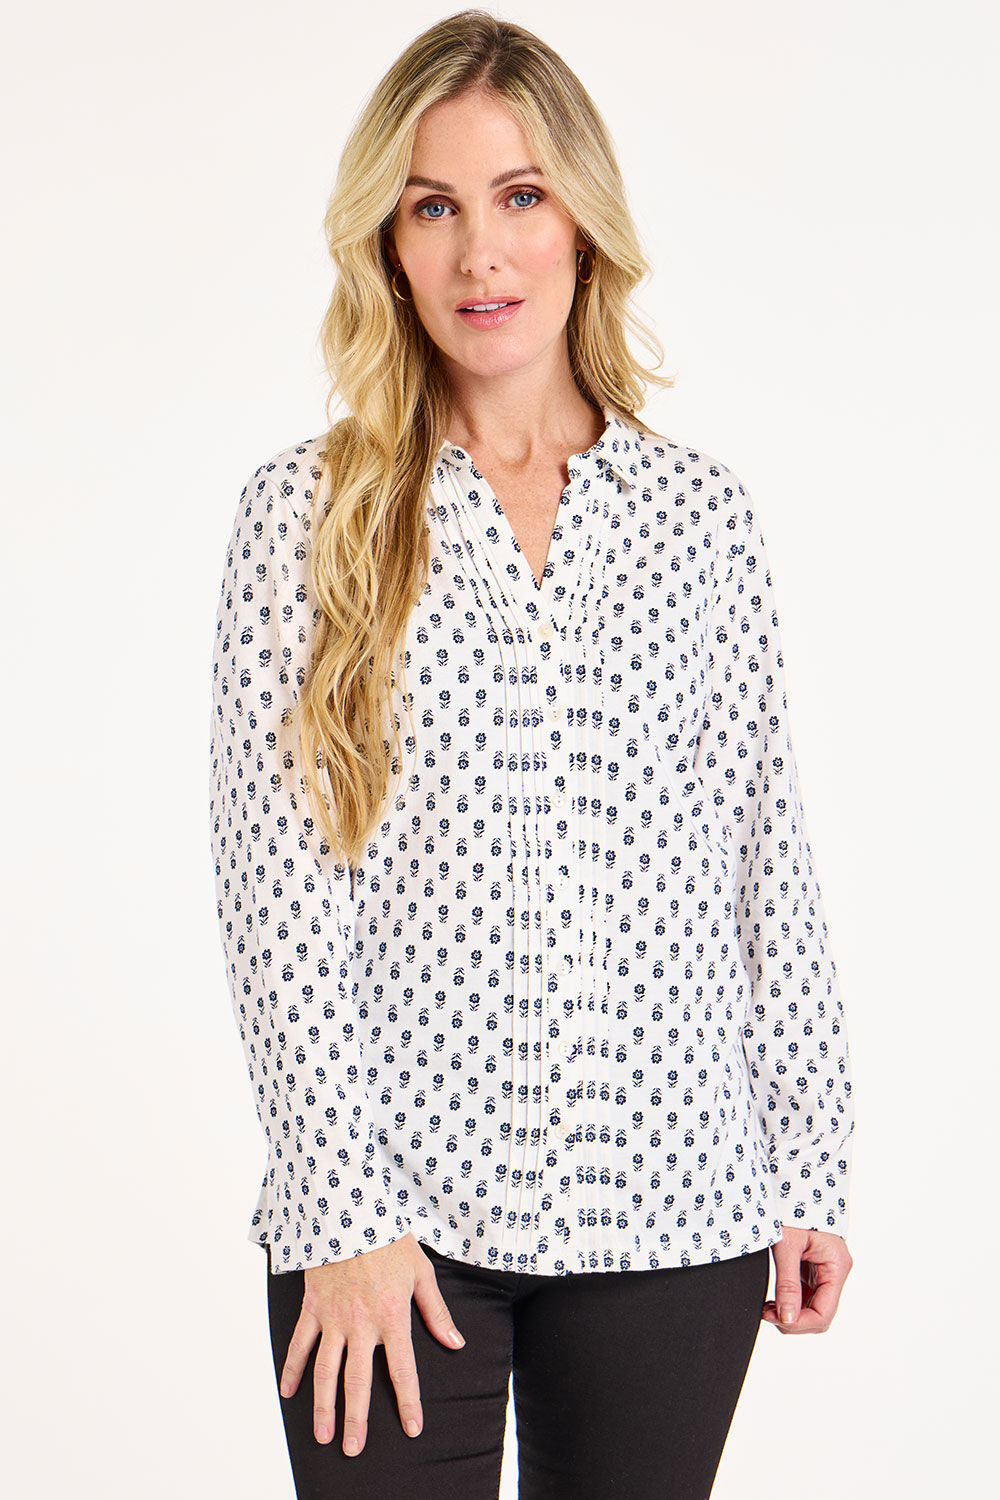 Bonmarche White/grey Long Sleeve Floral Foulard Print Jersey Shirt, Size: 18